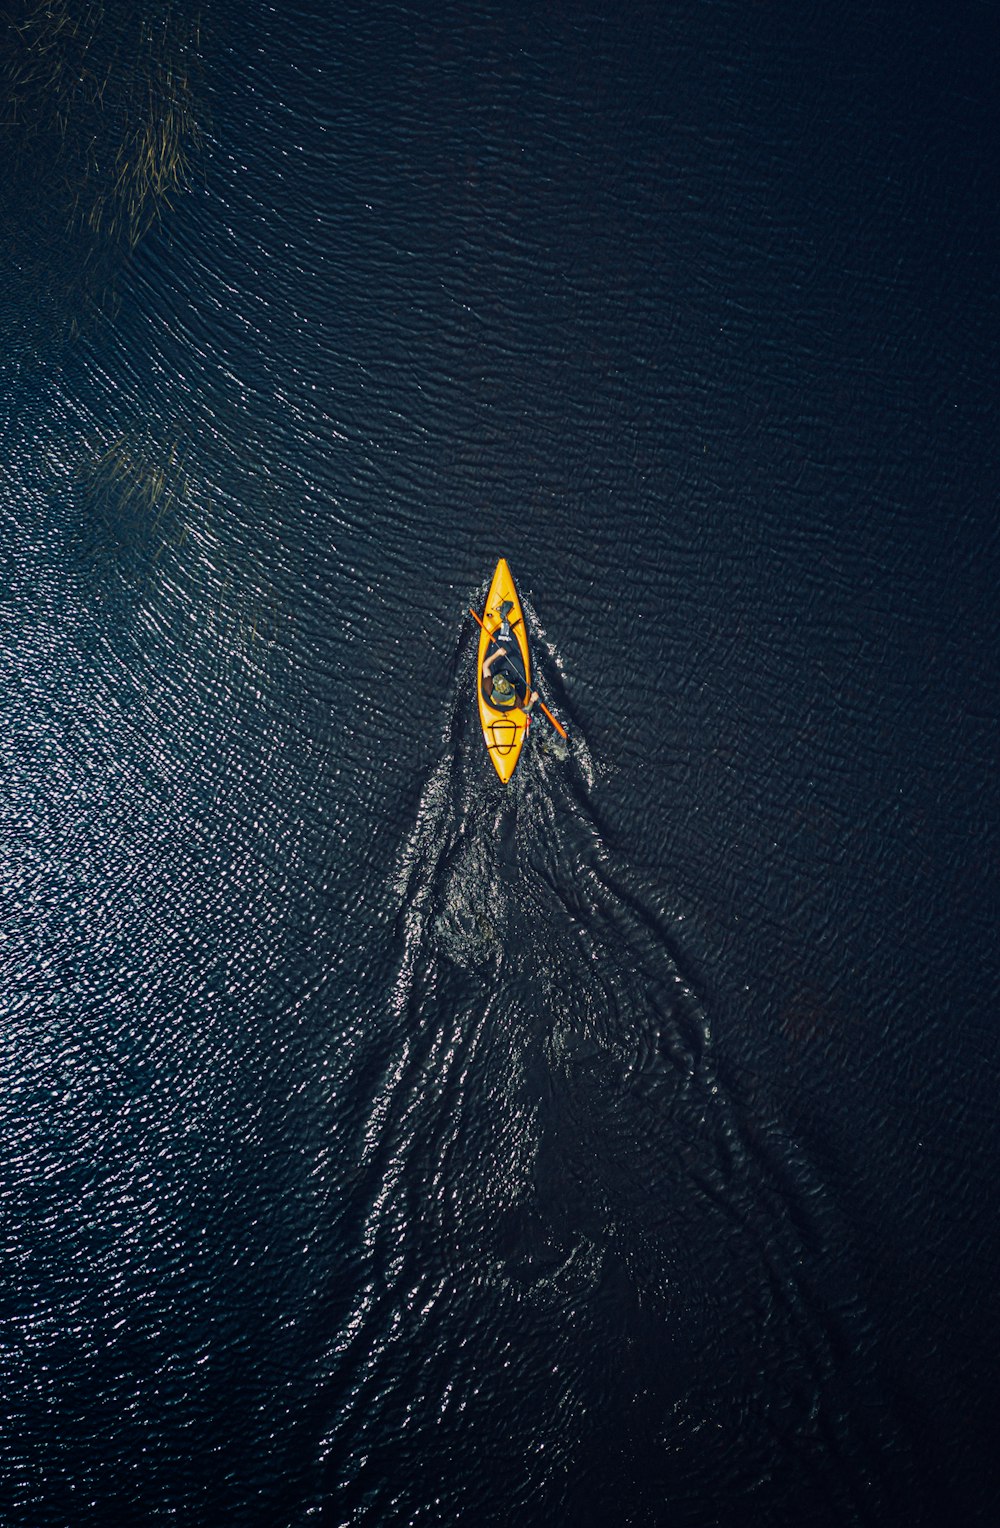 prancha de surf amarela e preta no corpo de água